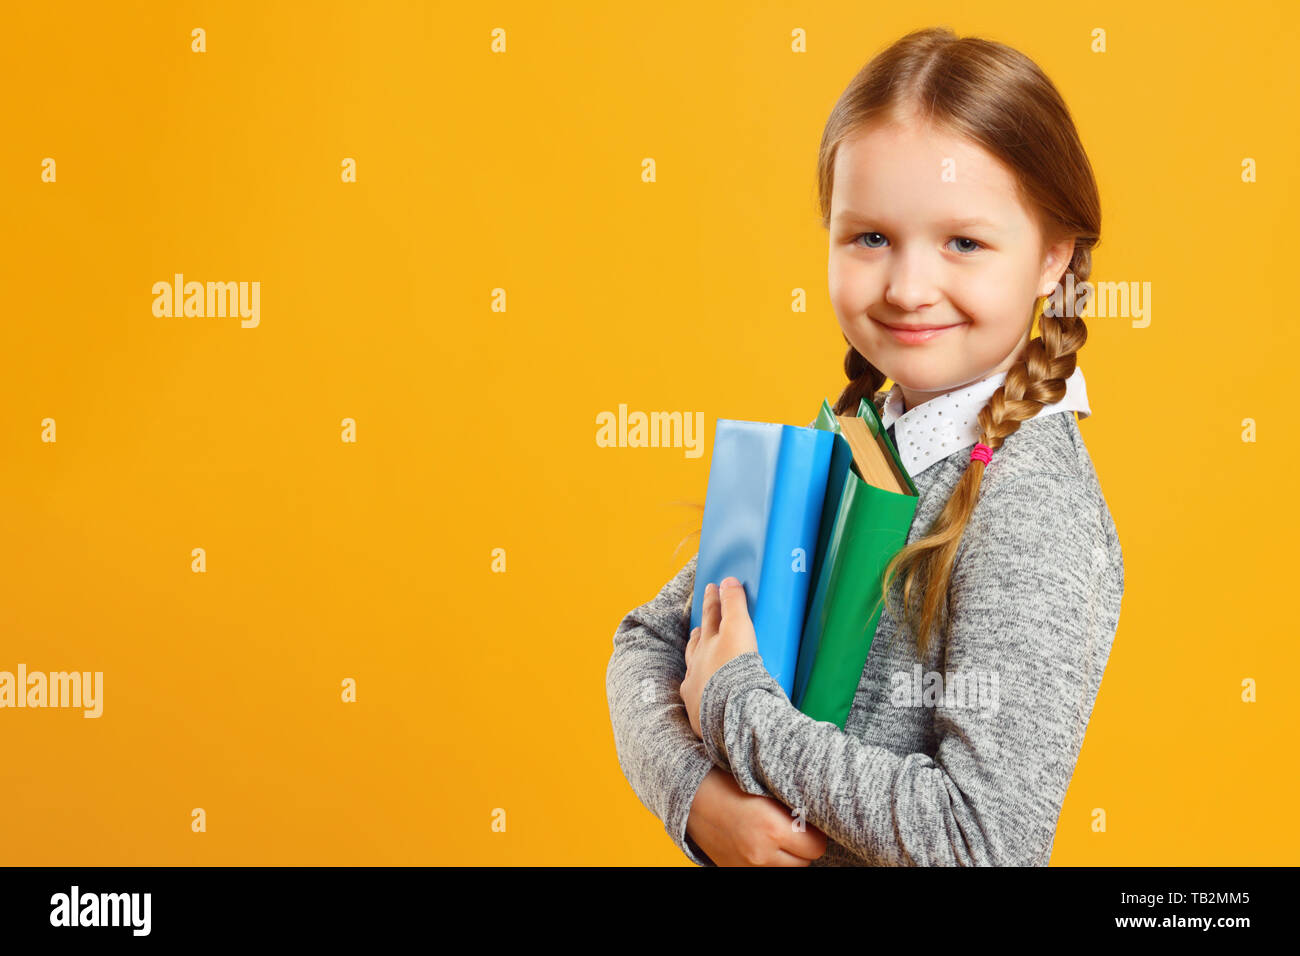 Retrato de una niña colegiala con pigtails sobre un fondo amarillo. El niño contiene libros de texto. El concepto de la educación y de la escuela. Copie el espacio. Foto de stock